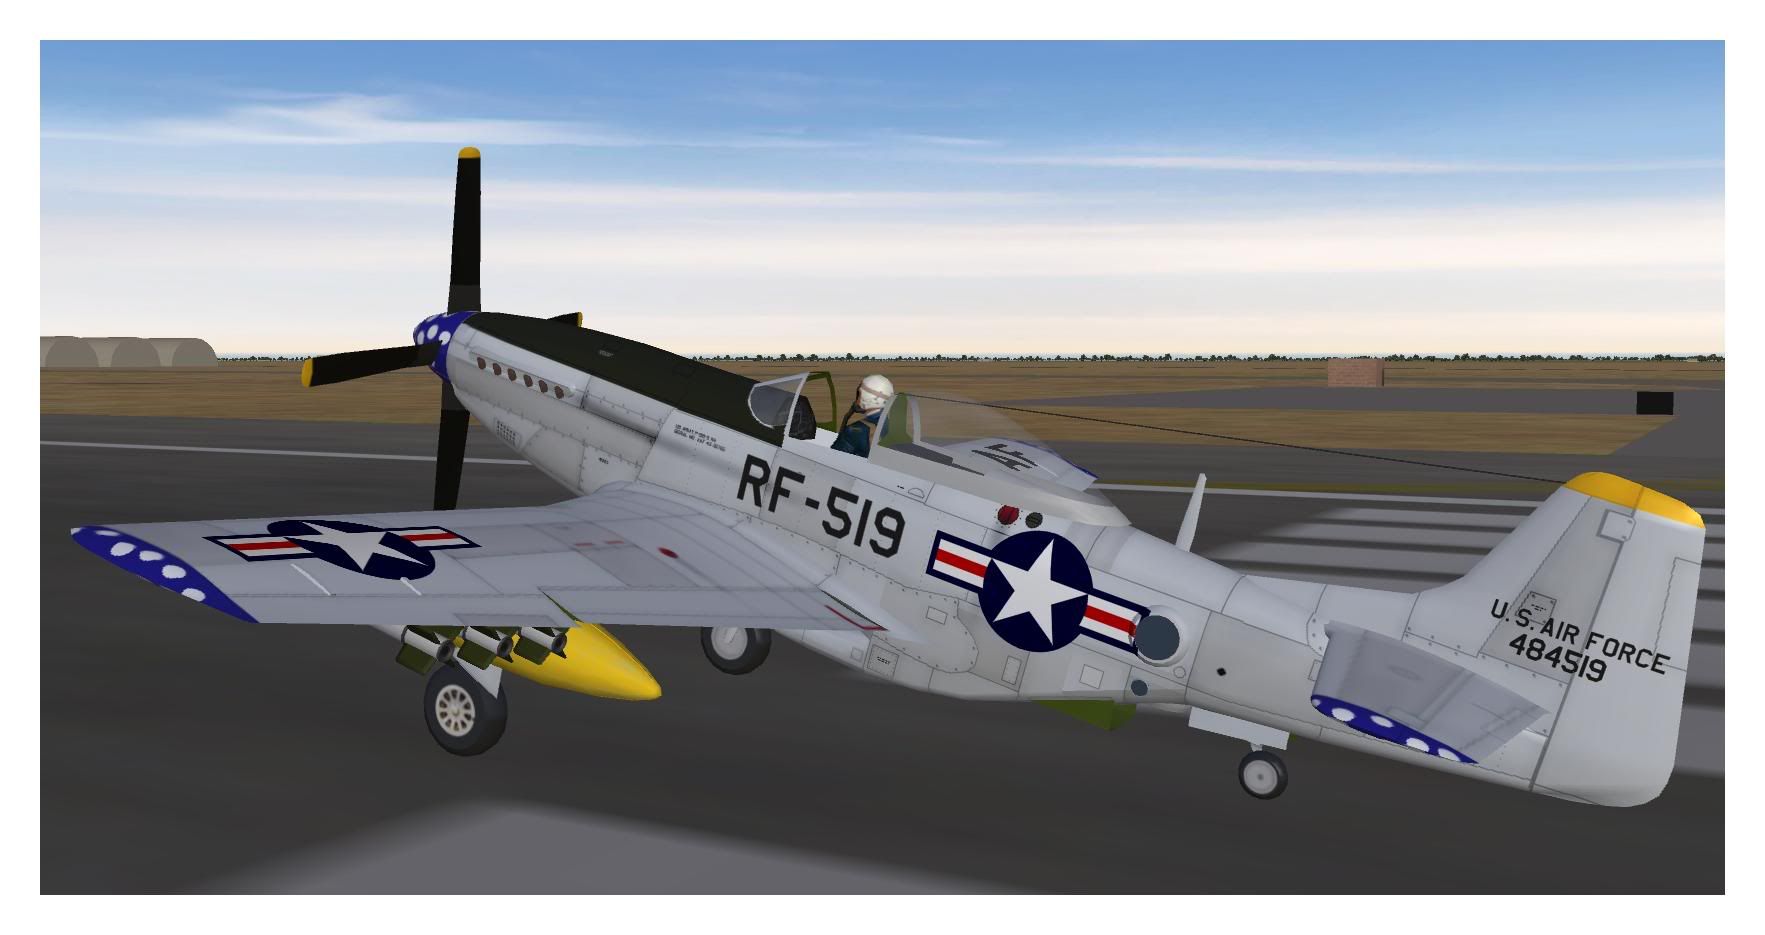 RF-51Djpg.jpg